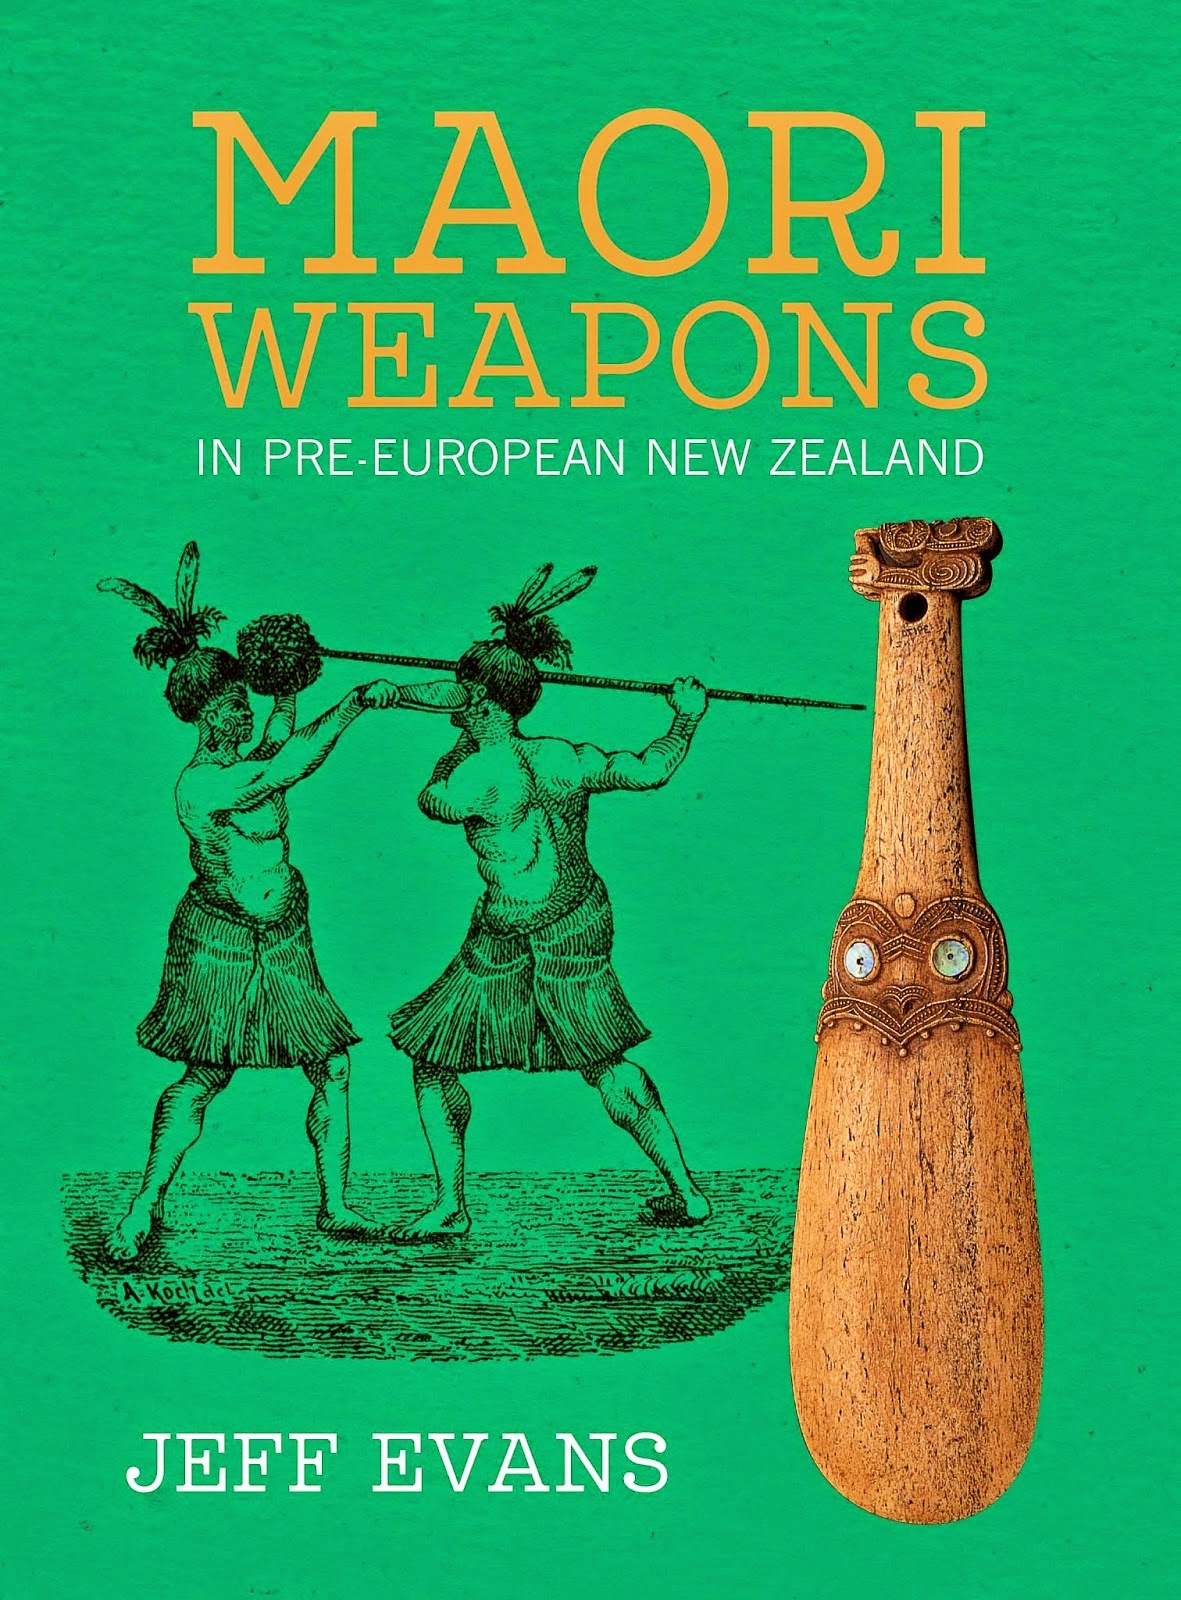 Maori Weapons